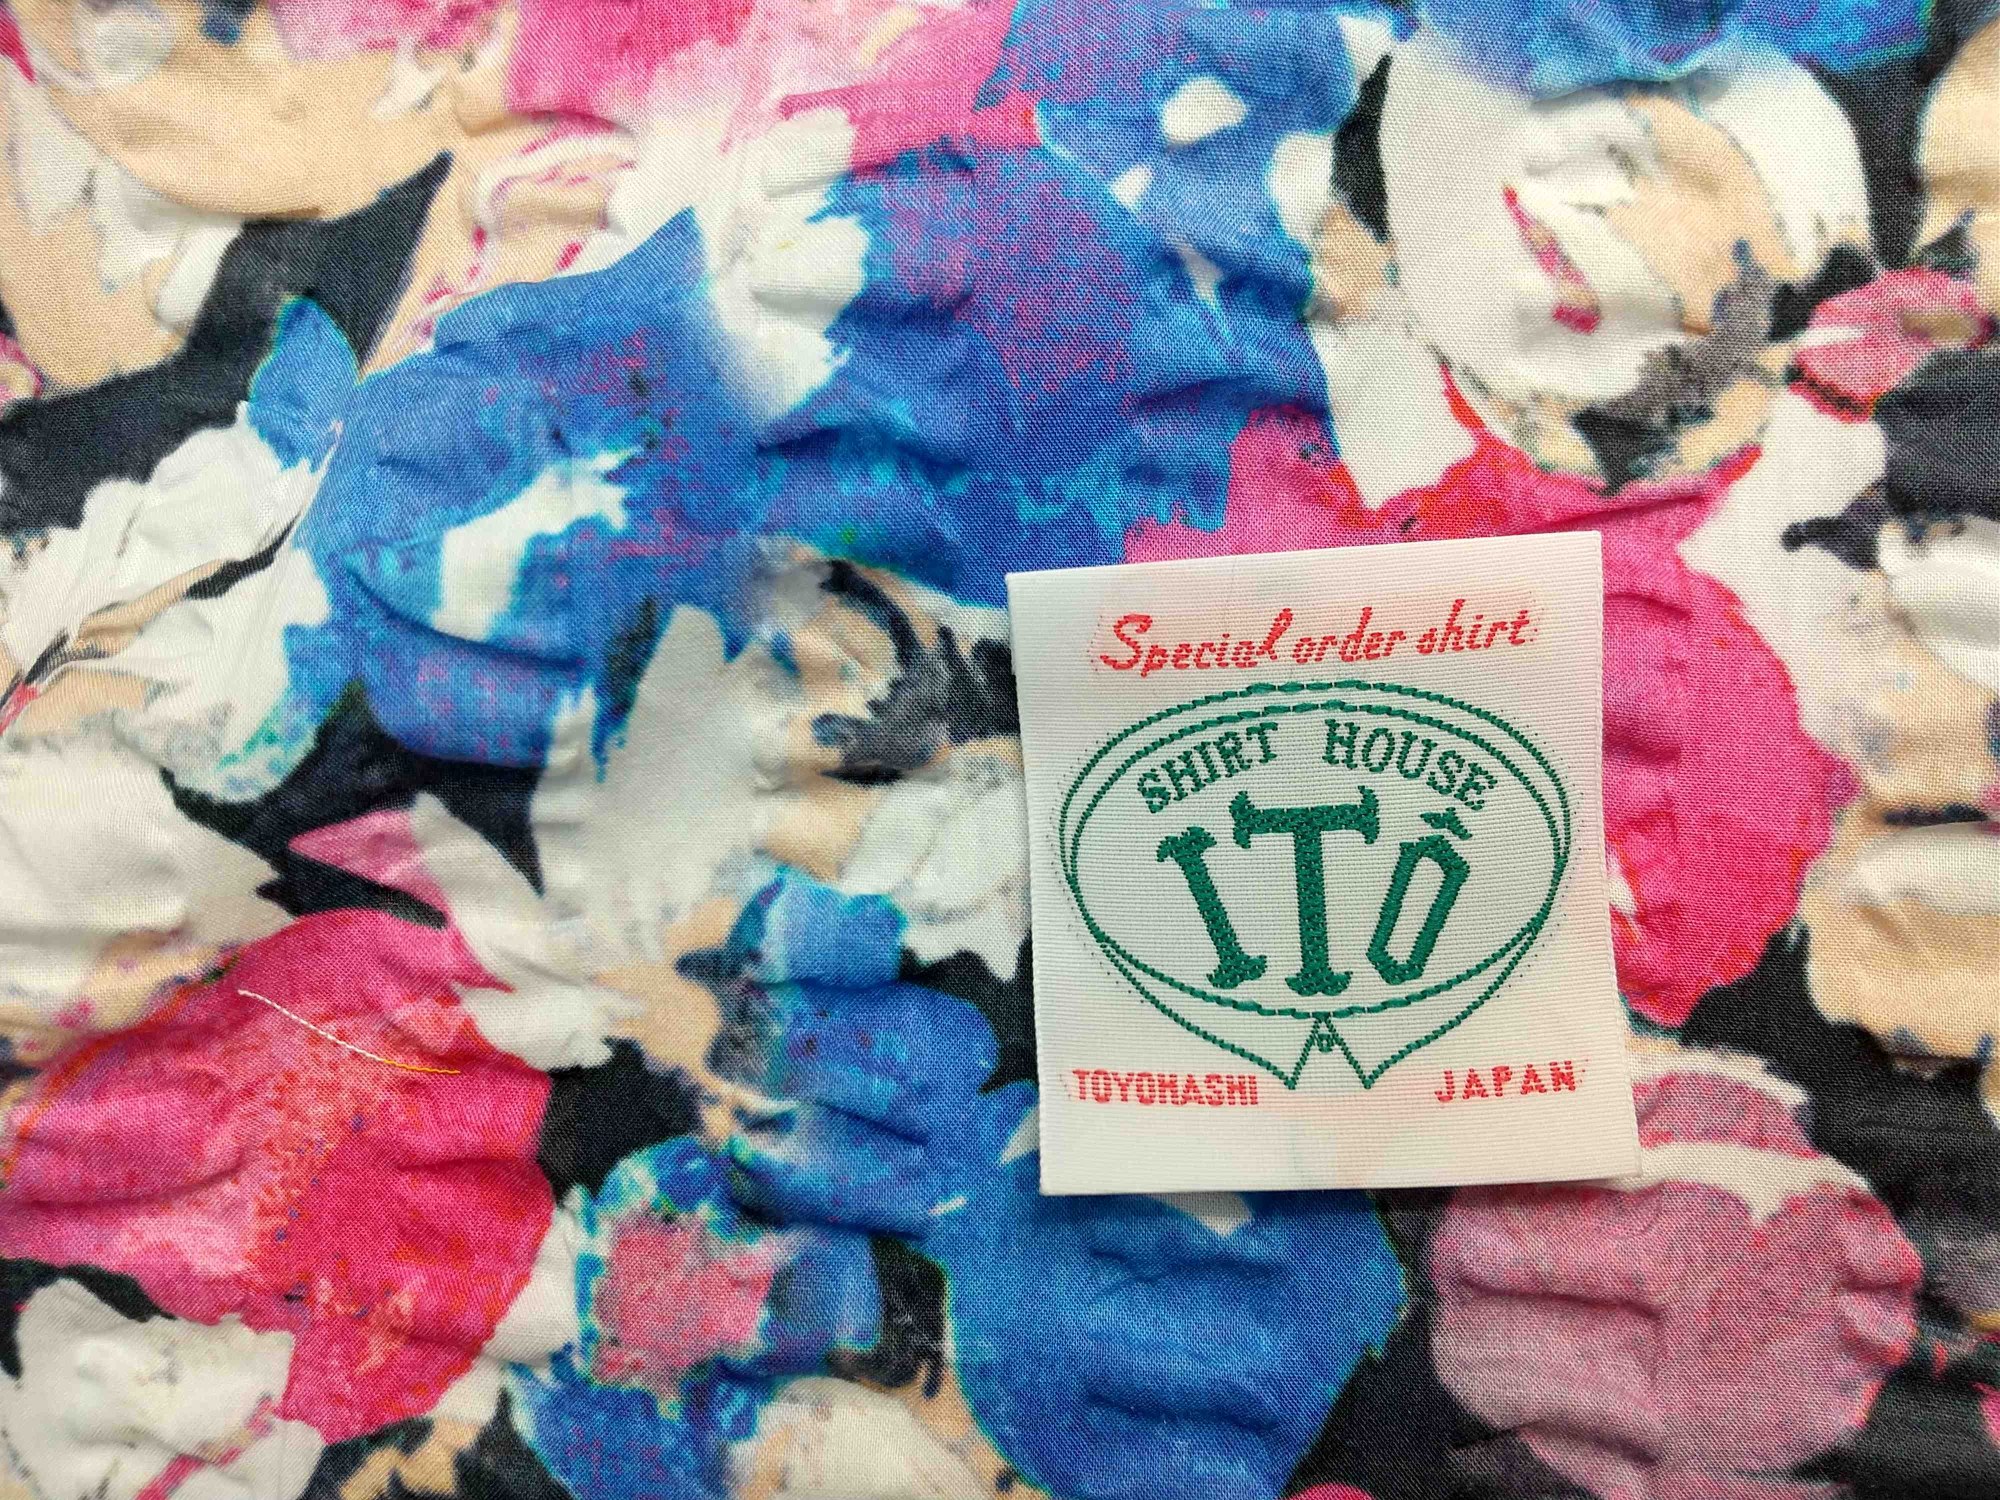  лето предмет полный order shirt хлопок 100% футбол многоцветный принт цветочный принт Швейцария производства (i000160)